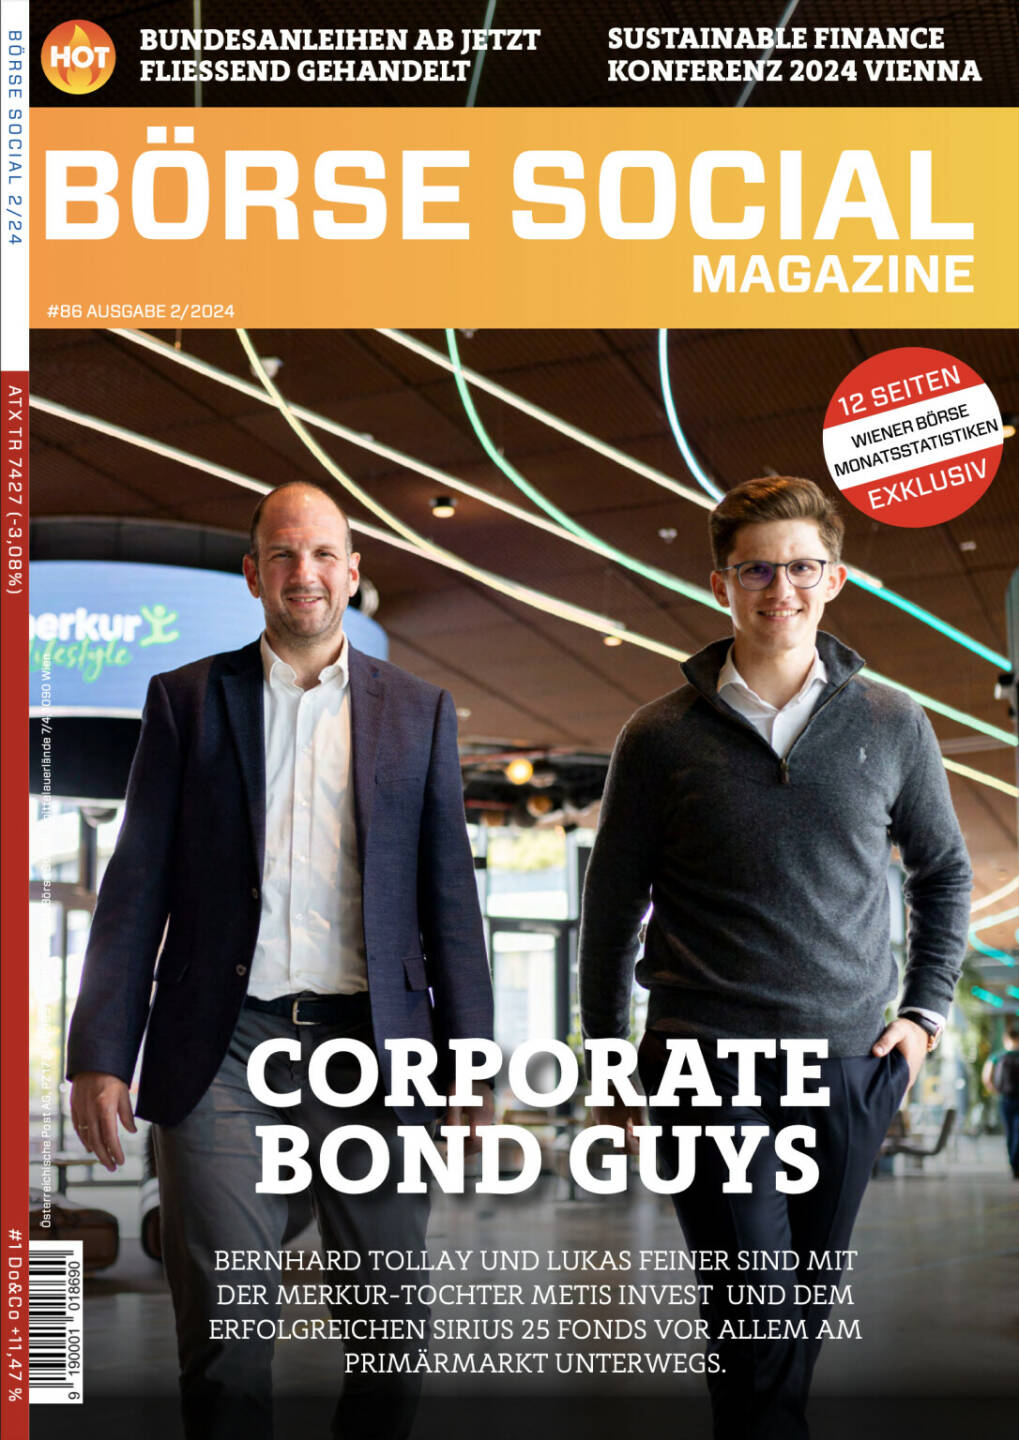 BSM #86 - Corporate Bond Guys - Bernhard Tollay und Lukas Feiner sind mit der Merkur-Tochter Metis Invest und dem erfolgreichen Sirius 25 Fonds vor allem am Primärmarkt unterwegs.